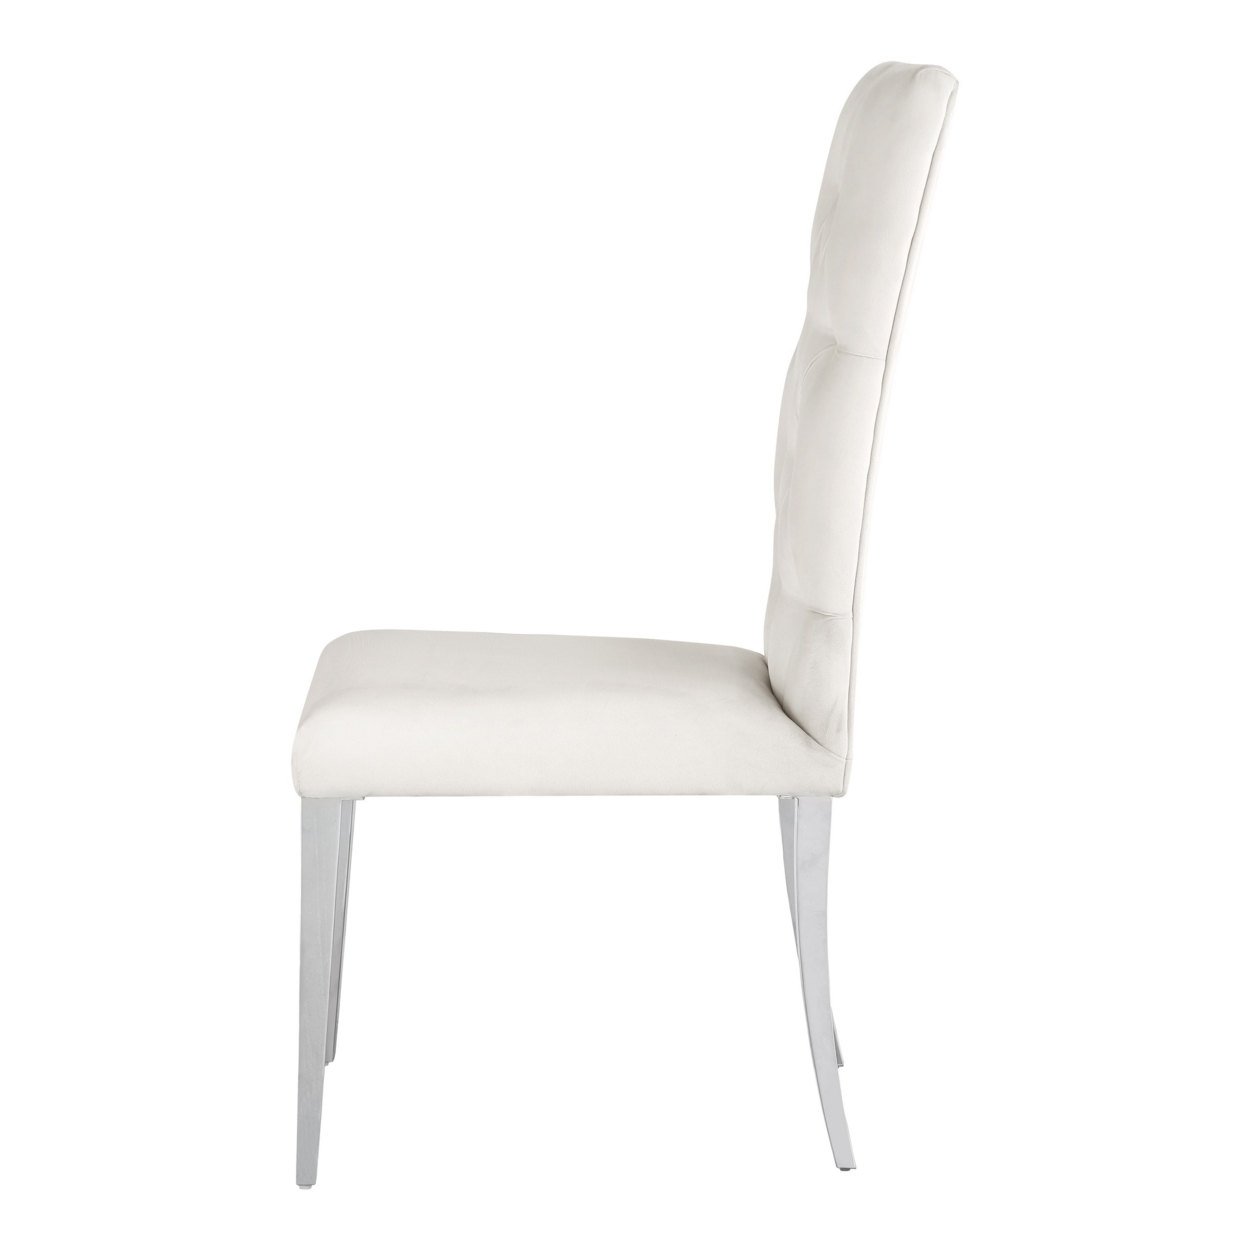 Kery 20 Inch Set Of 2 Side Chairs, White Velvet, Tall Flared Tufted Back- Saltoro Sherpi